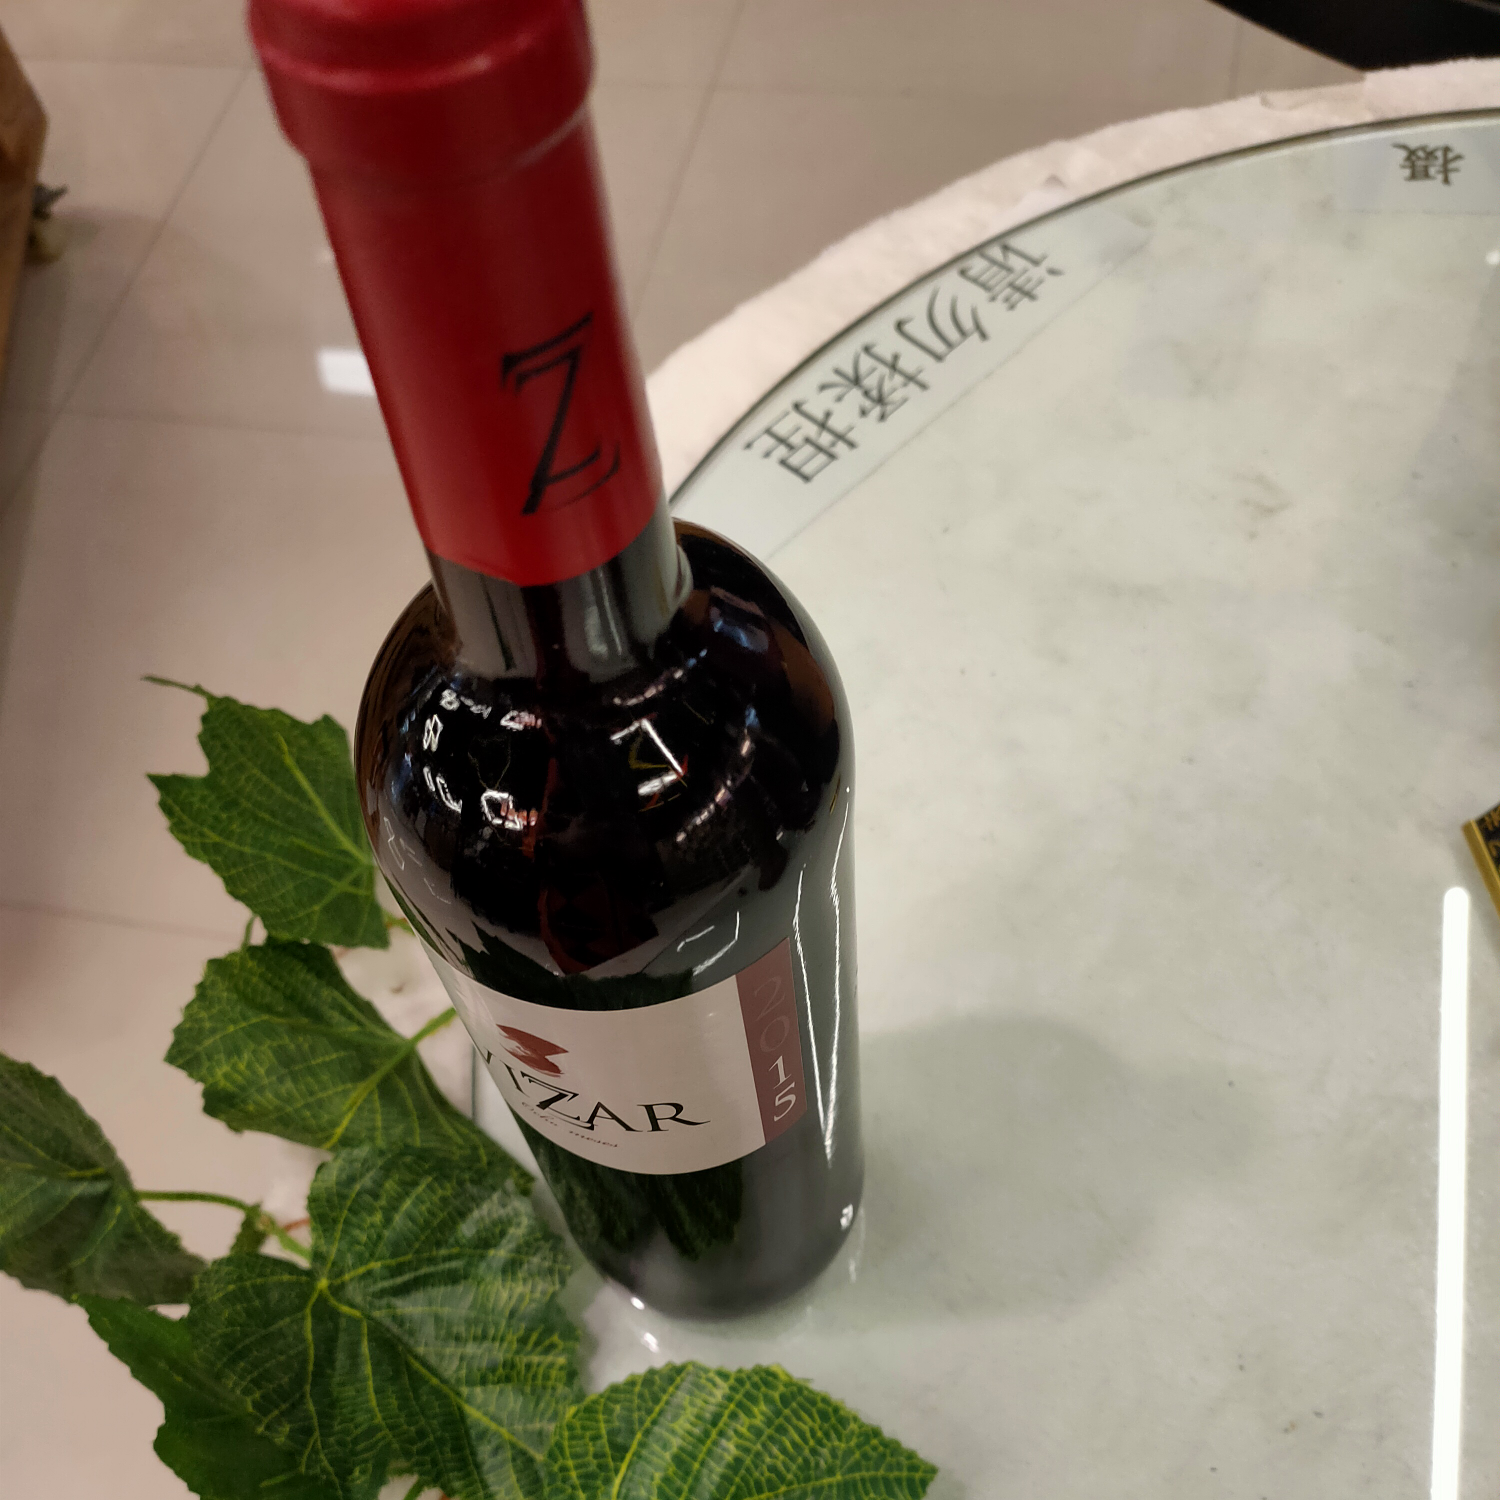 潍萨尔系列
五个月享受干红
2015年份酒